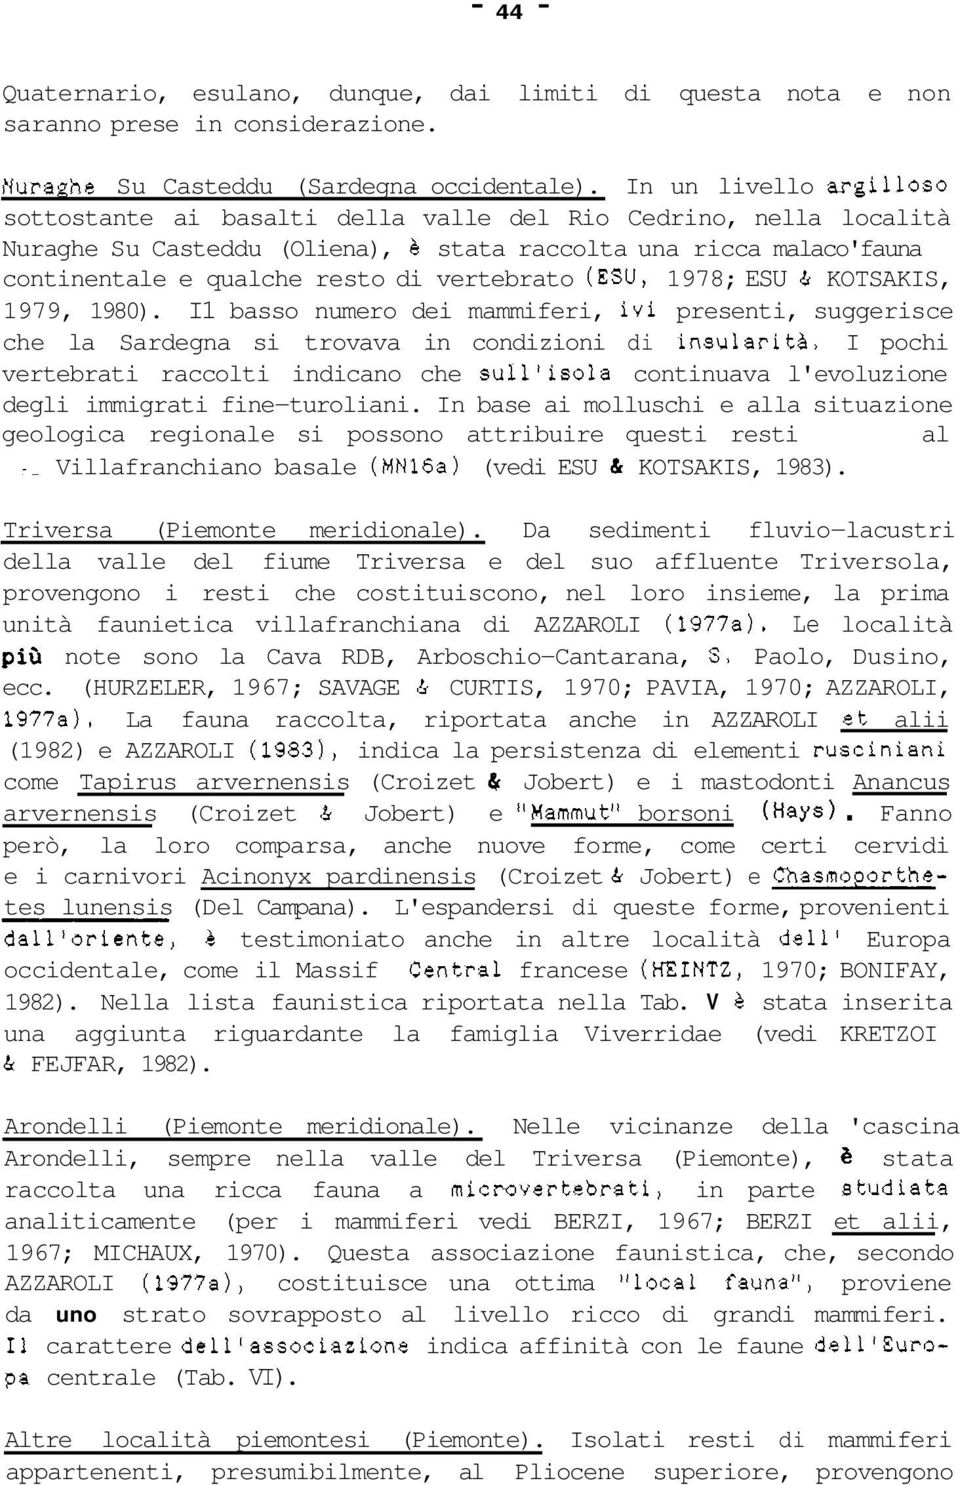 vertebrato (ESU, 1978; ESU & KOTSAKIS, 1979, 1980). I1 basso numero dei mammiferi, ivi presenti, suggerisce che la Sardegna si trovava in condizioni di insularità.